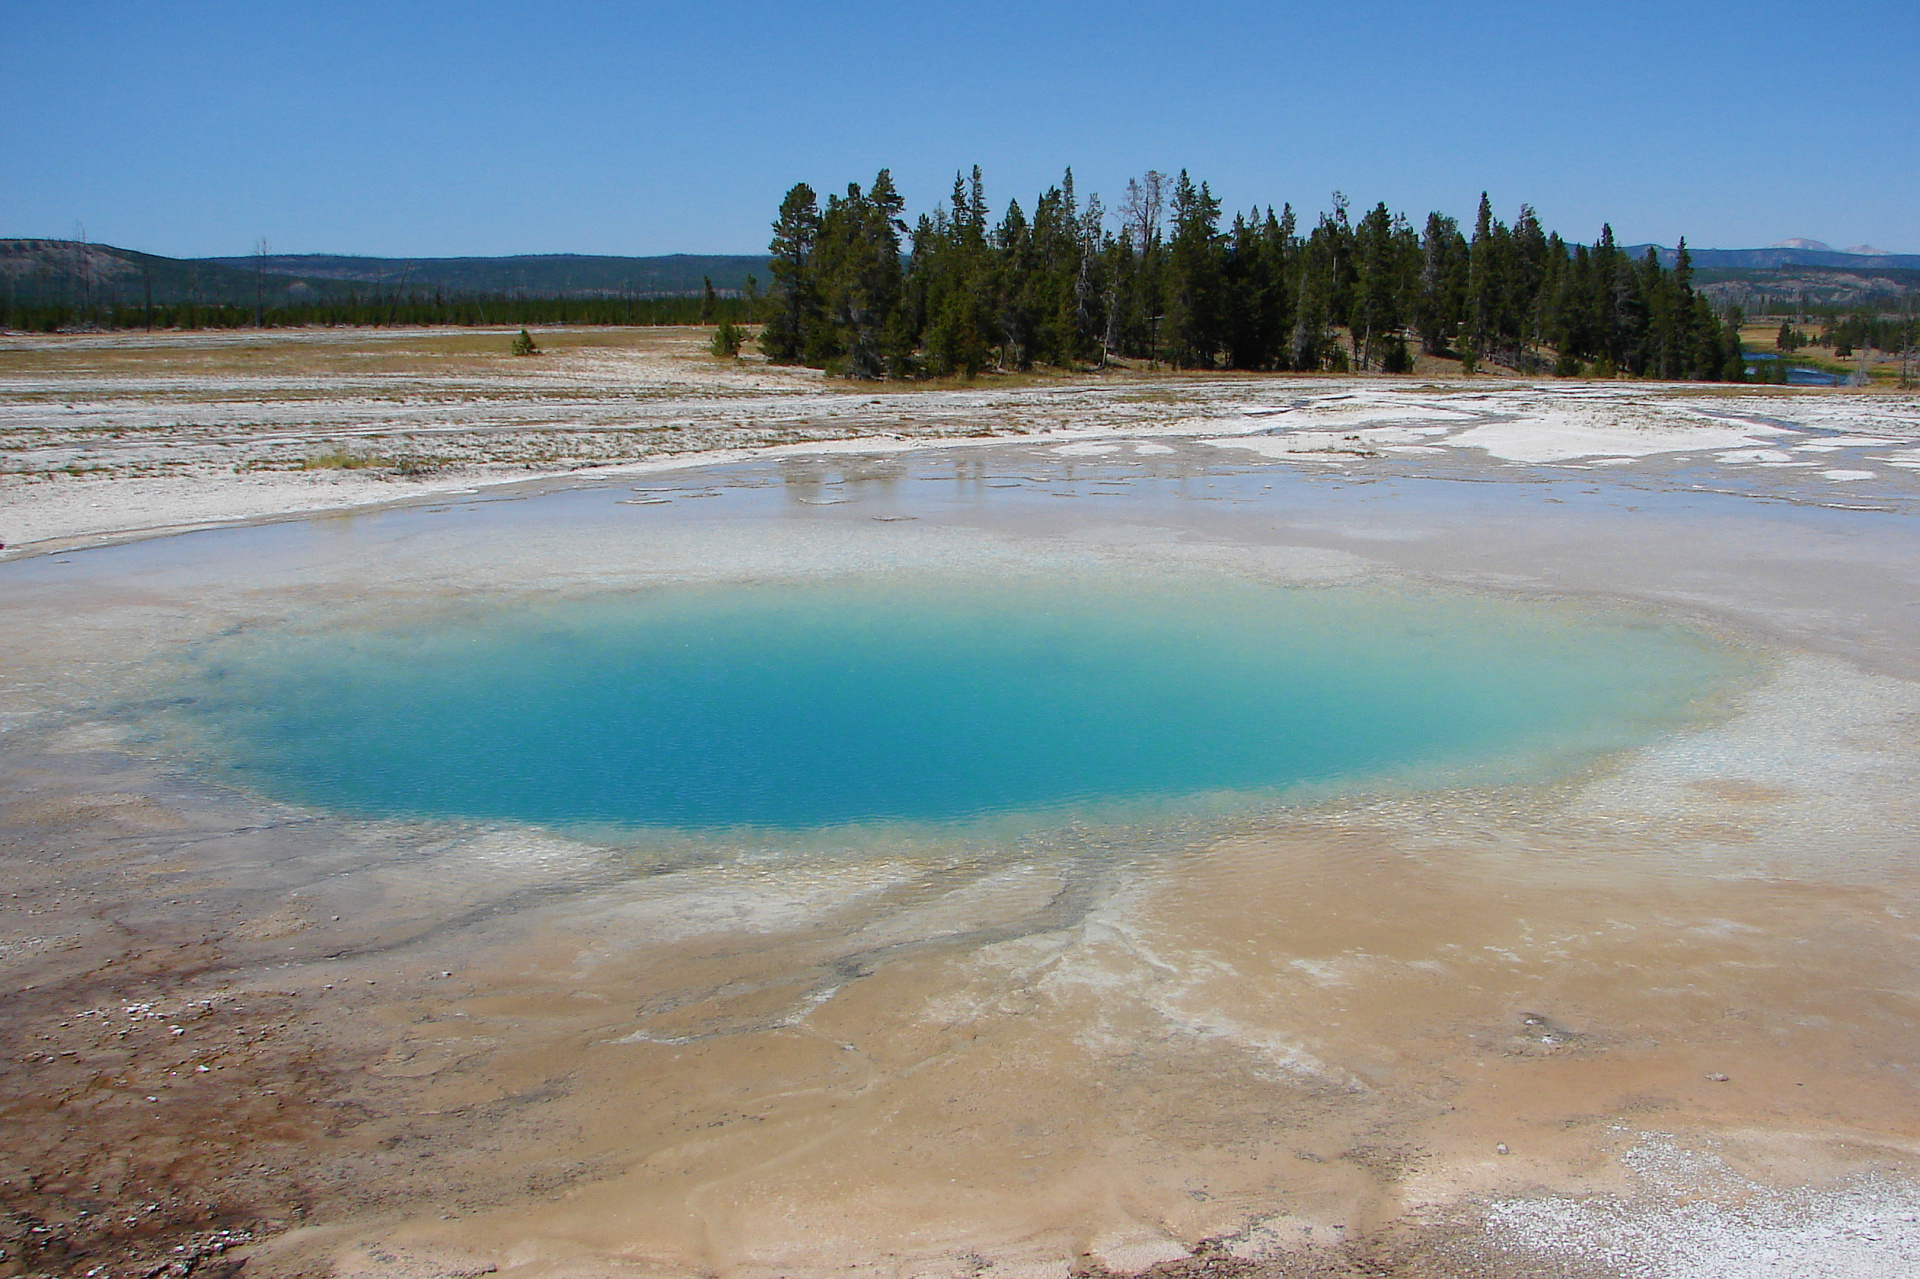 Opal Pool (Podróże » USA: Na ziemi Czejenów » Wielka Podróż » Park Narodowy Yellowstone » Gejzery, gorące źródła i jeziora » Midway Geyser Basin)